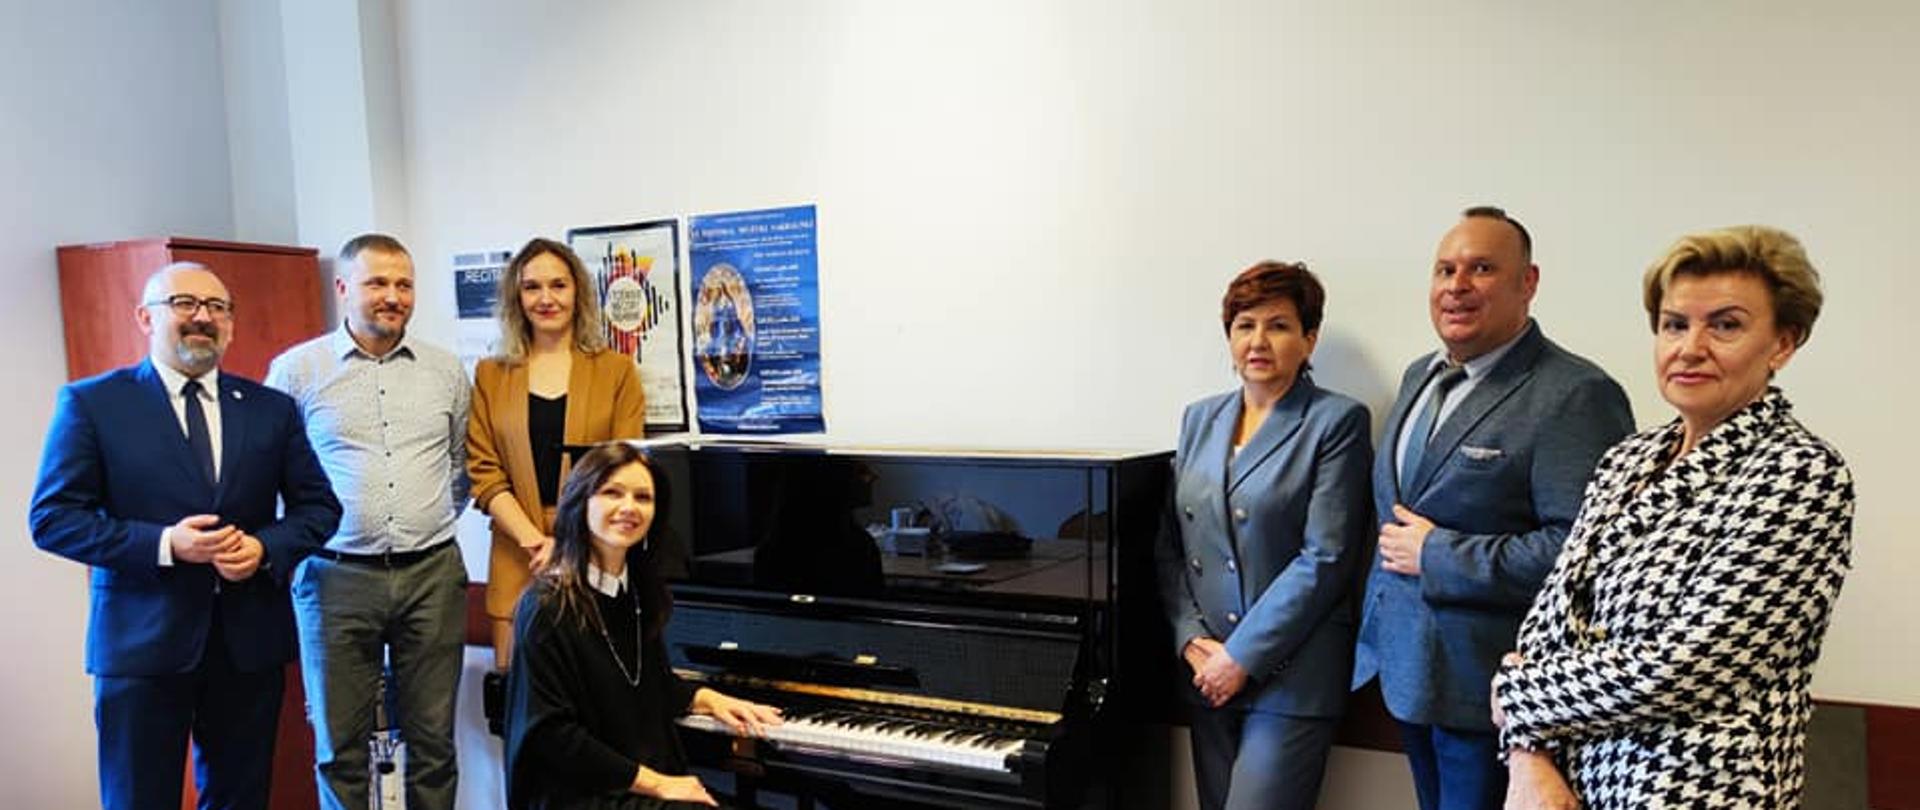 Na zdjęciu Starosta Krzysztof Bieńkowski oraz Przewodnicząca Rady Powiatu Przasnyskiego Katarzyna Wróblewska wraz z przedstawicielami Szkoły Muzycznej, Fundacji SCALAM oraz Fundacji PELIKAN. 